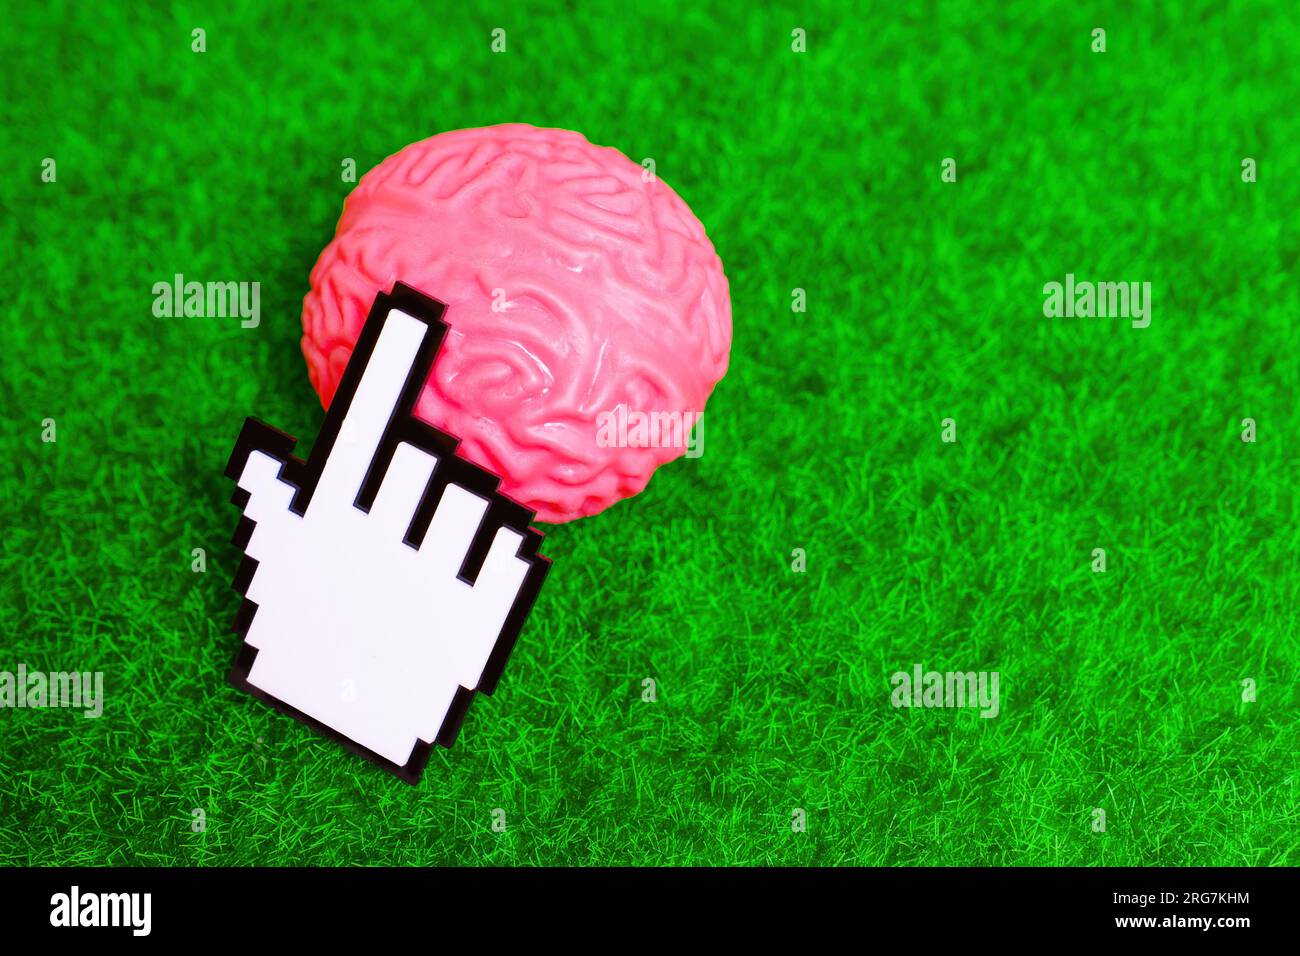 Der weiße Blockzeiger klickt auf ein Miniaturmodell des menschlichen Gehirns, das auf einer grünen Wiese platziert ist. Natur und hirngesundheitliche Beziehung. Stockfoto